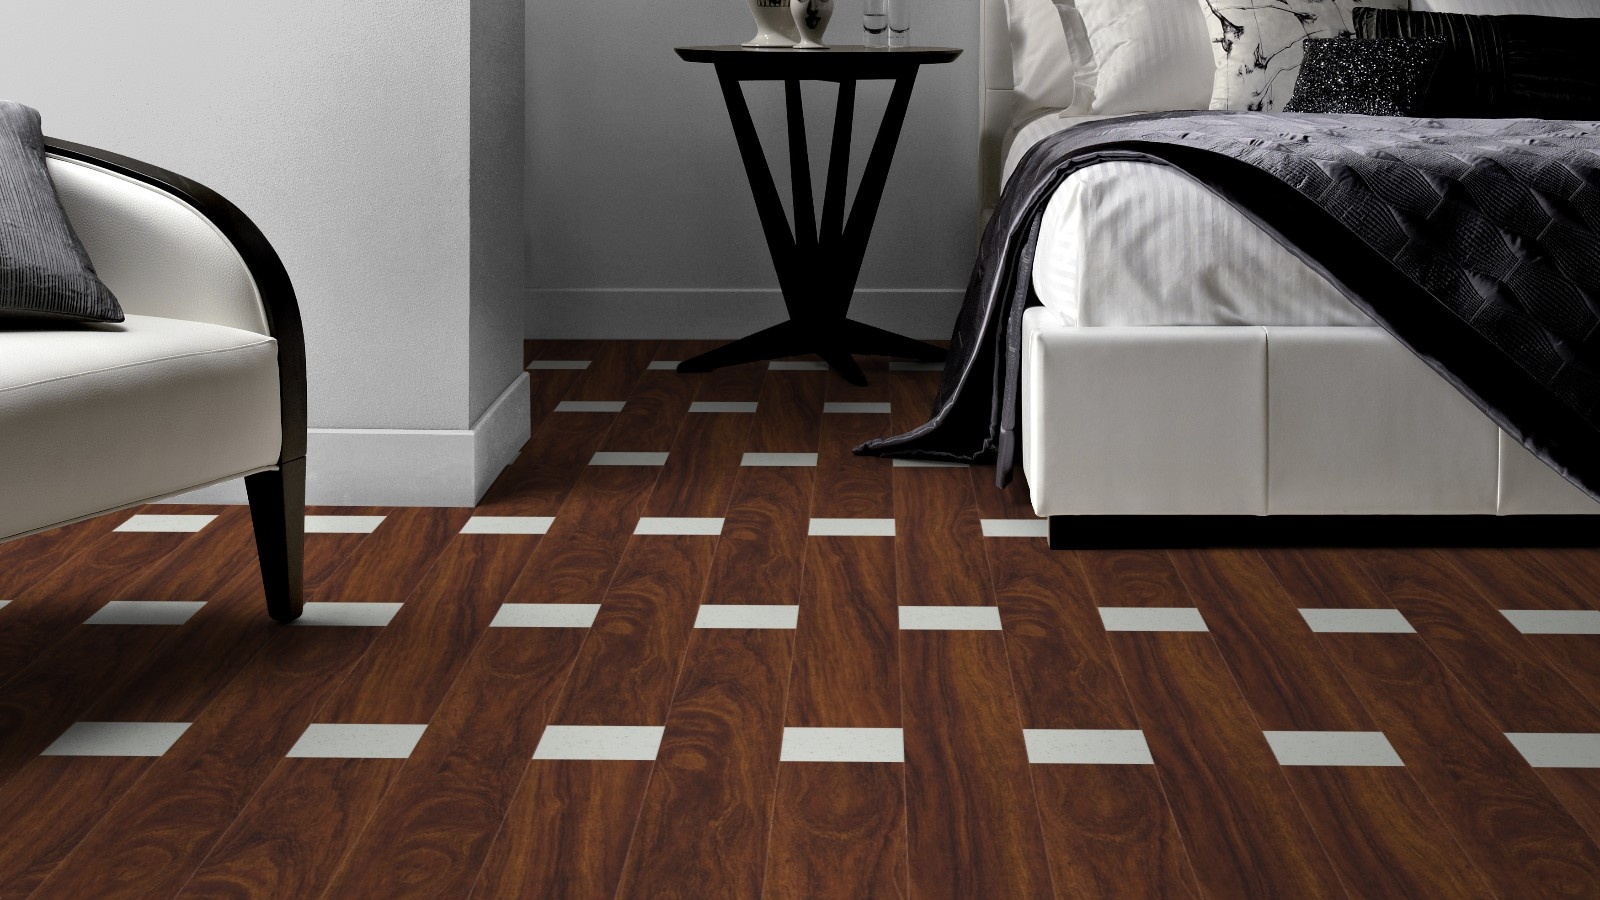 designer-floor-tiles-and-patterns-for-bedroom-